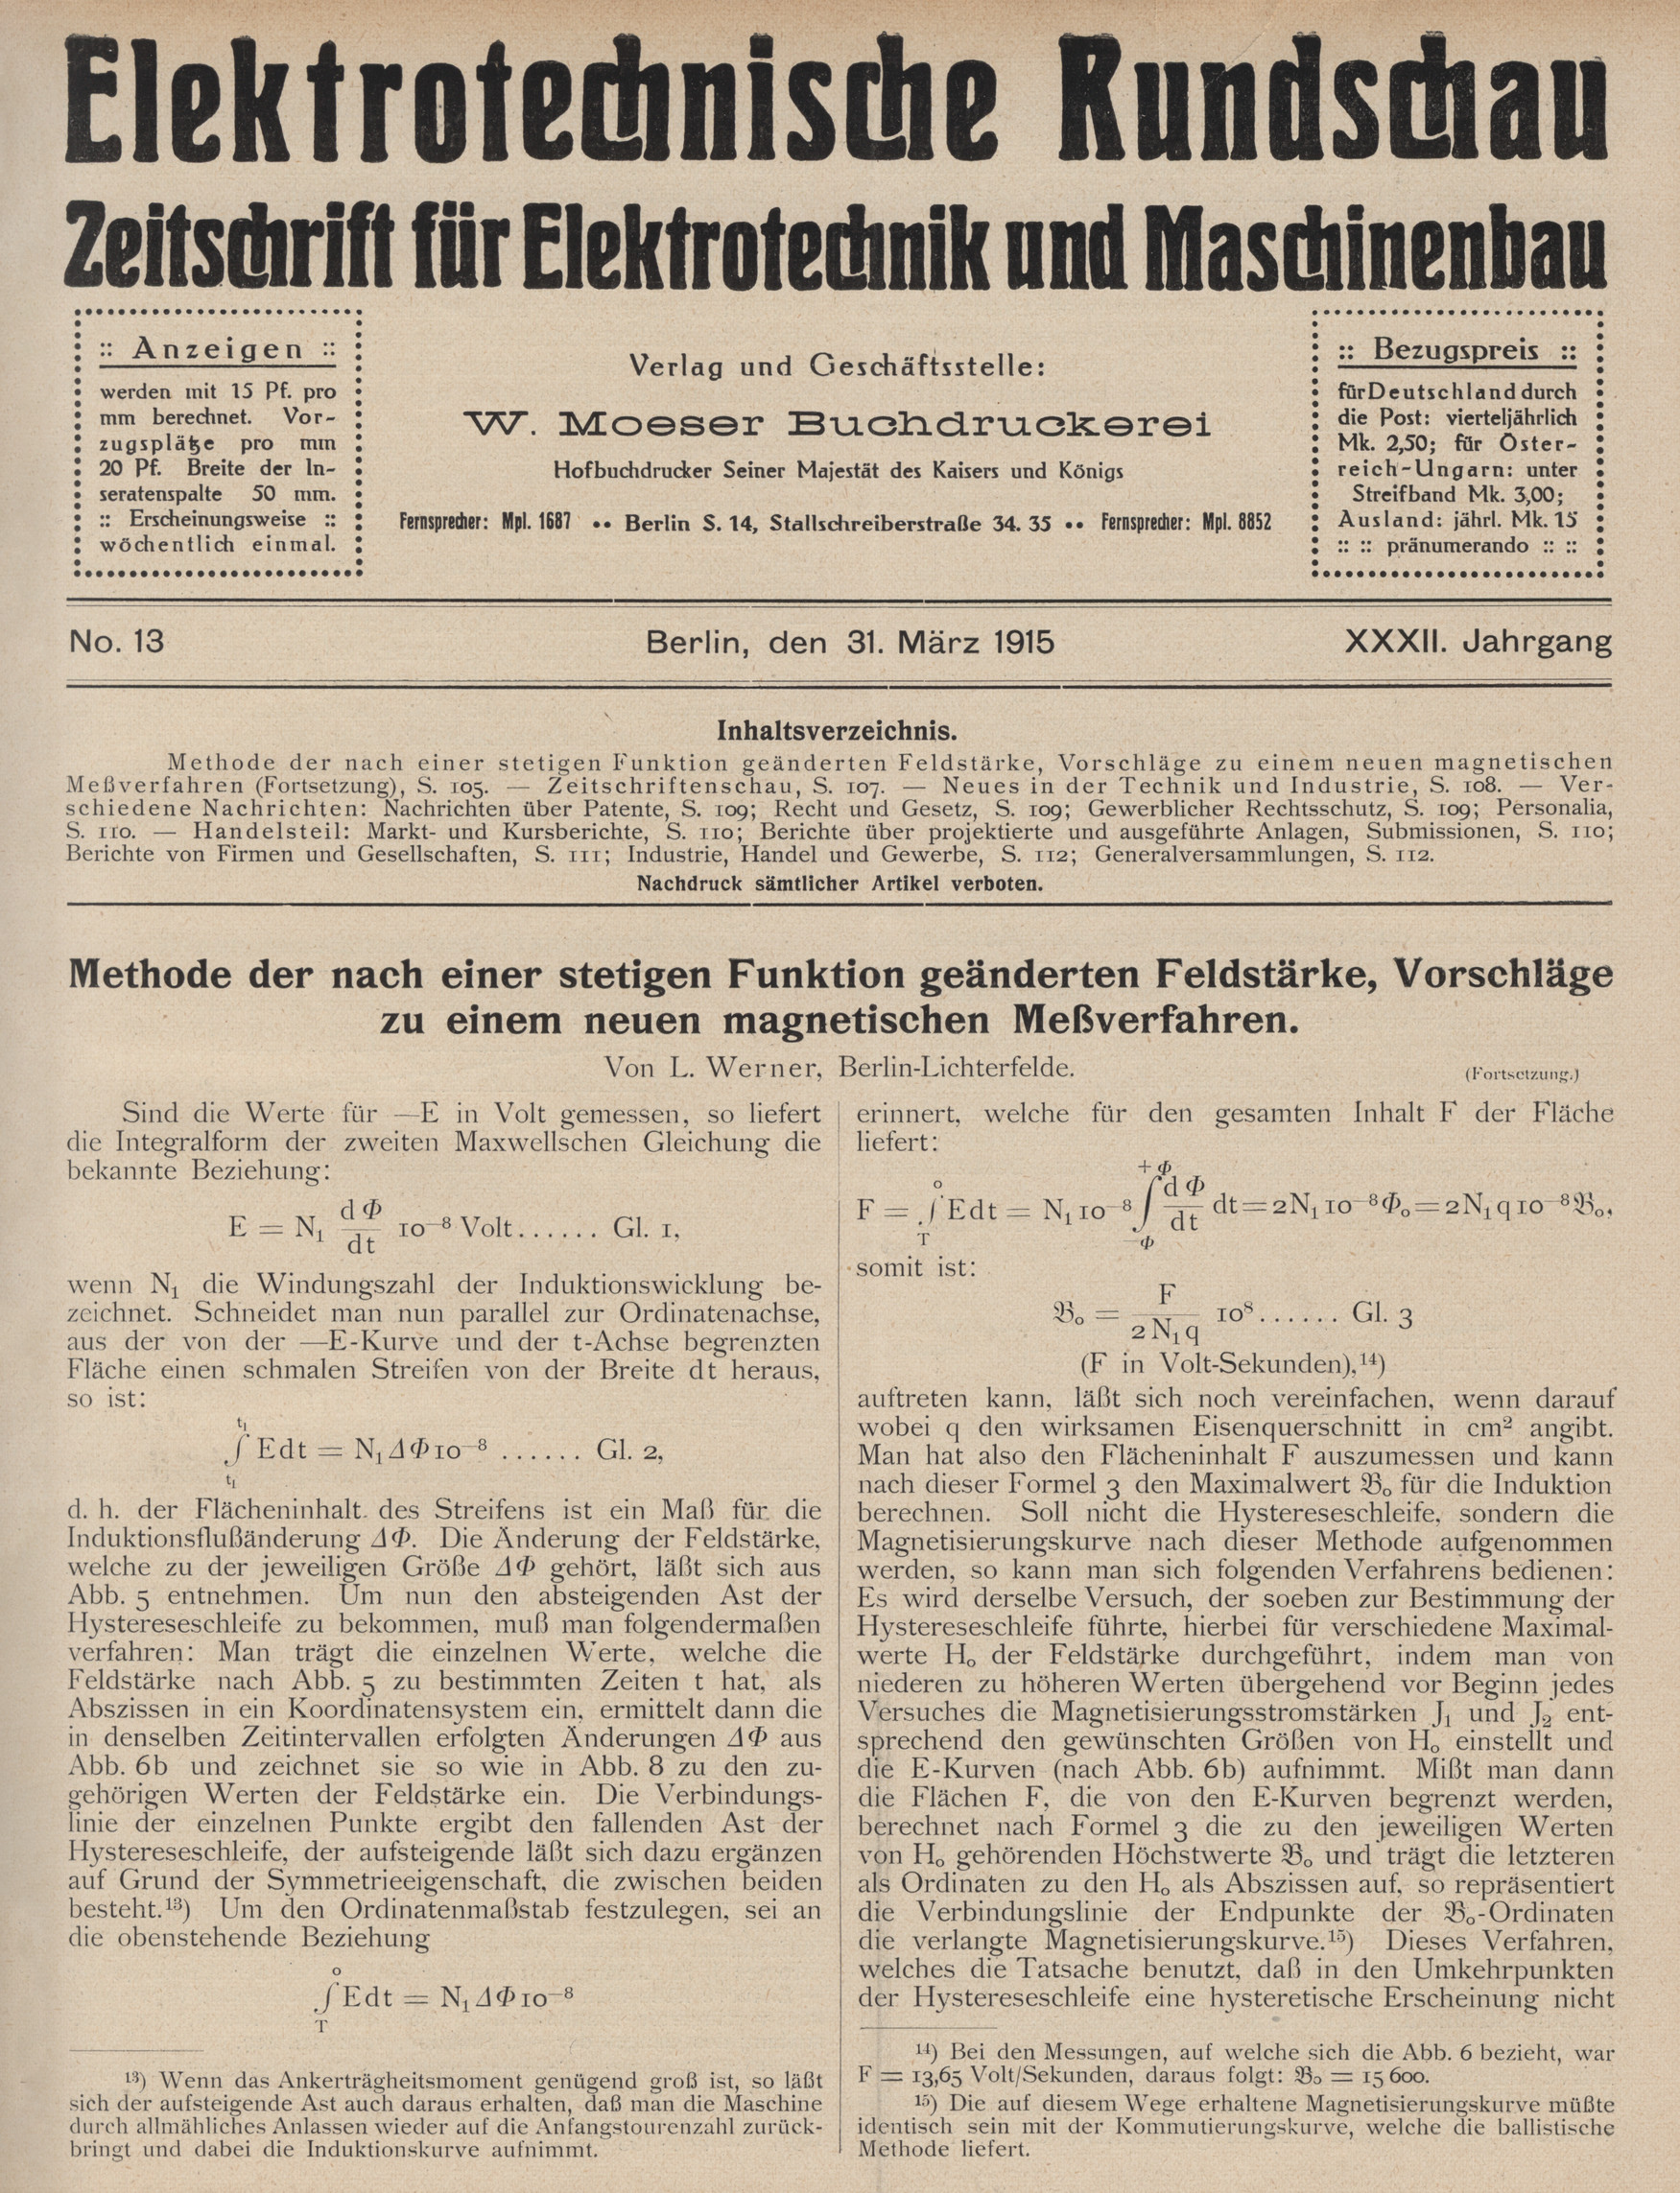 Elektrotechnische Rundschau : Zeitschrift für Elektrotechnik und Maschinenbau + Polytechnische Rundschau, No. 13, XXXII. Jahrgang